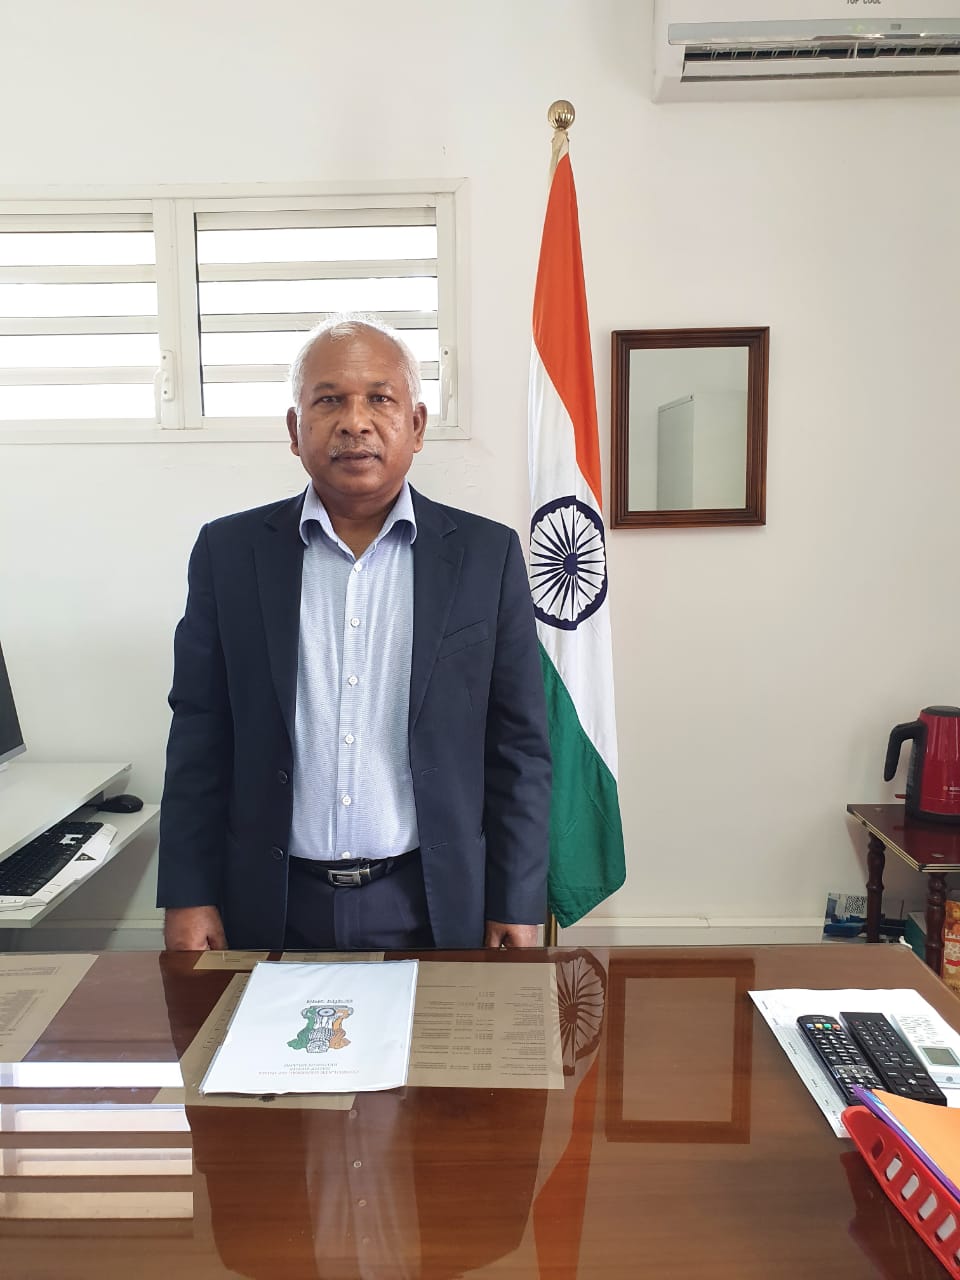 Jitendra Nath MAJHI, nouveau Consul Général de l'Inde à La Réunion